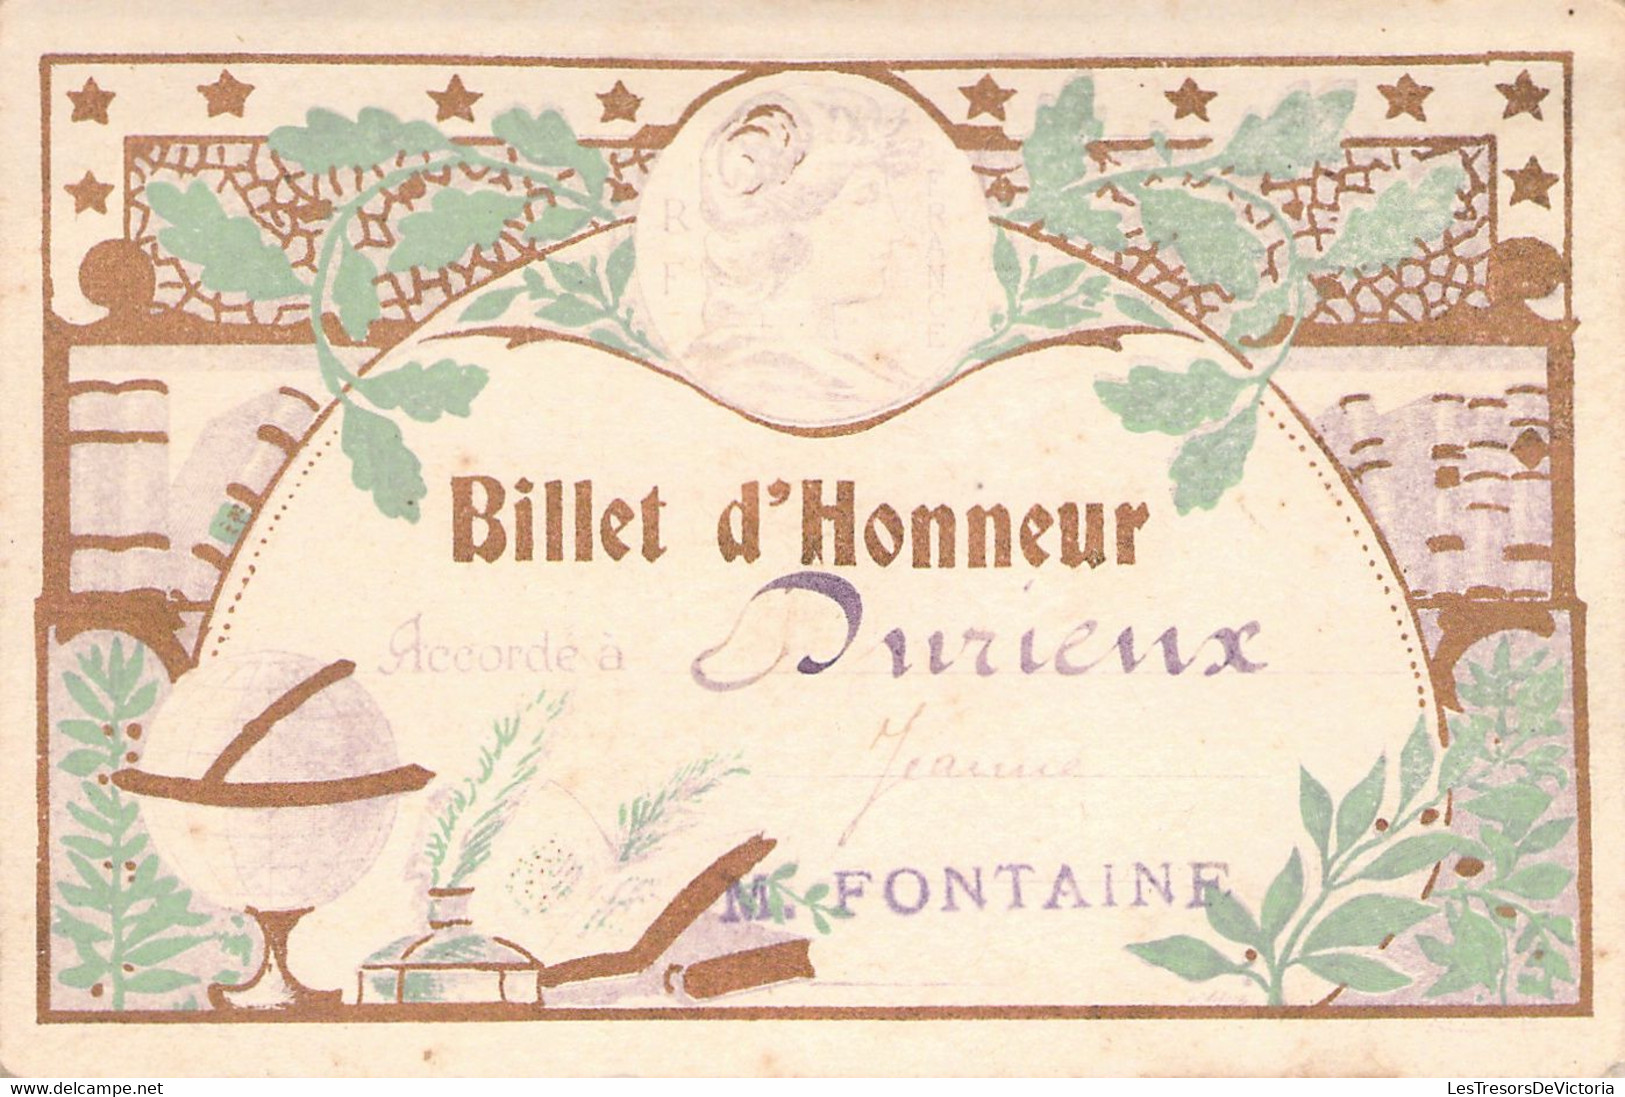 Lot De 4 Billets D'Honneur Accordé à Durieux Jeanne En 1924 - M Fontaine - France - BAISSE DE PRIX -50% - Diplômes & Bulletins Scolaires